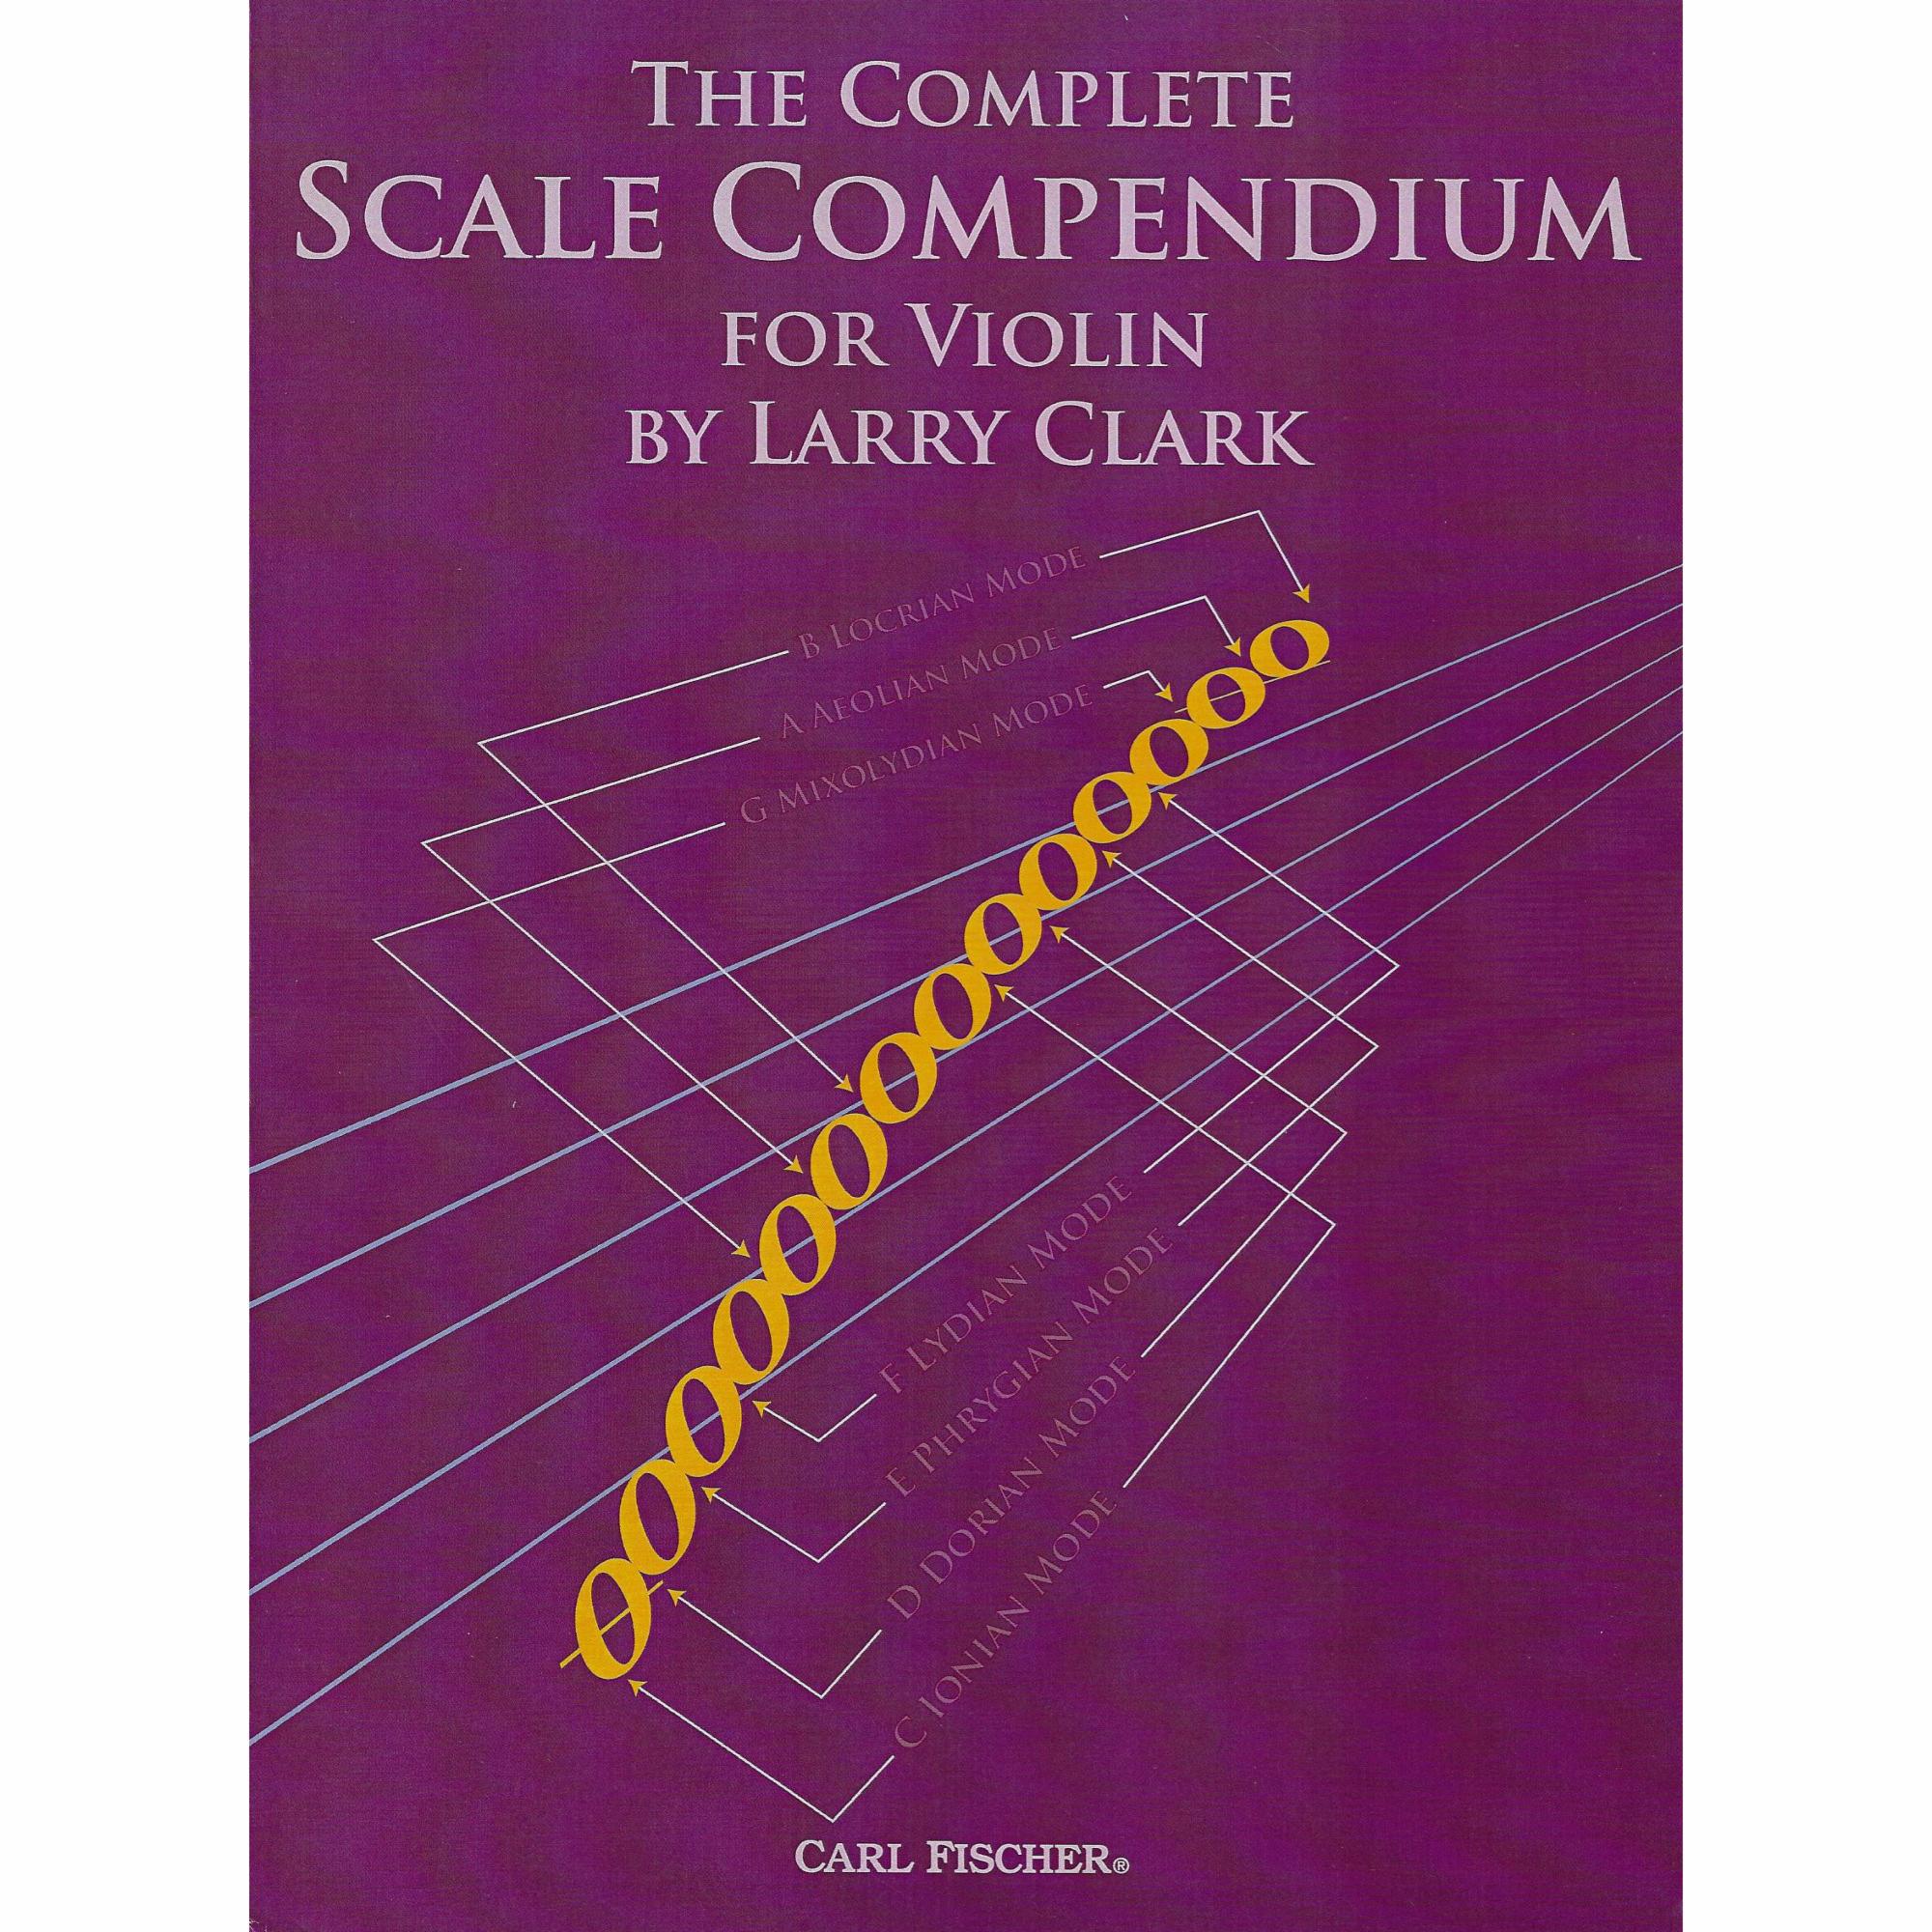 The Complete Scale Compendium for Violin